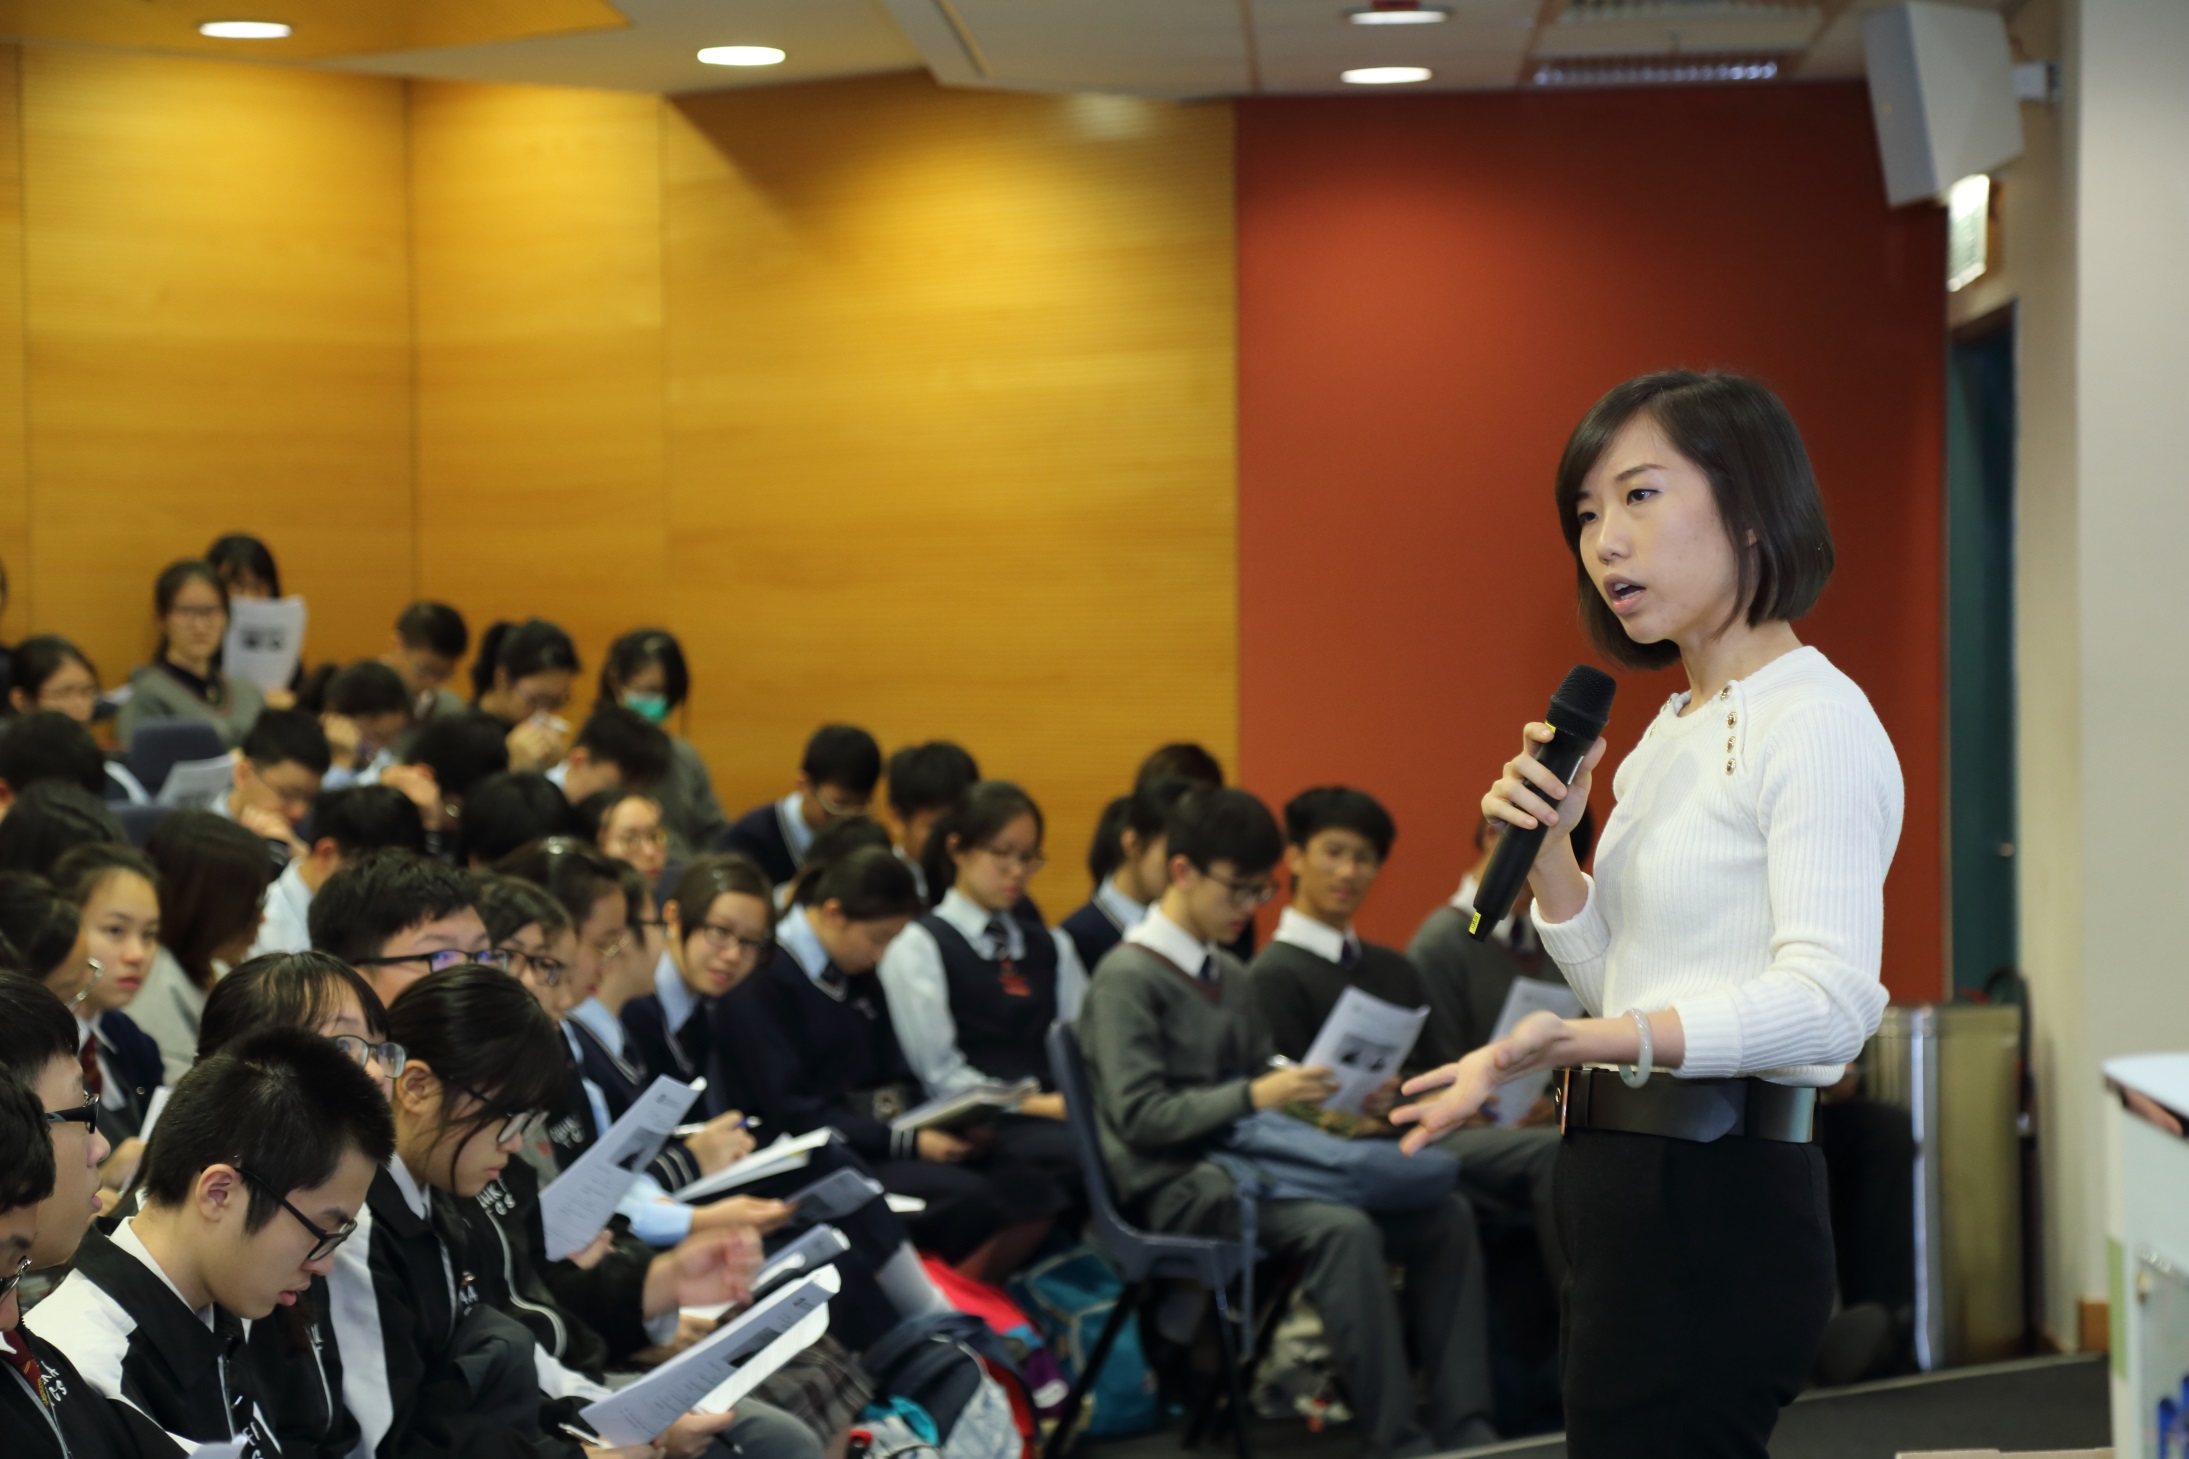 国际学院连系社区为400多名中学生提供英语训练